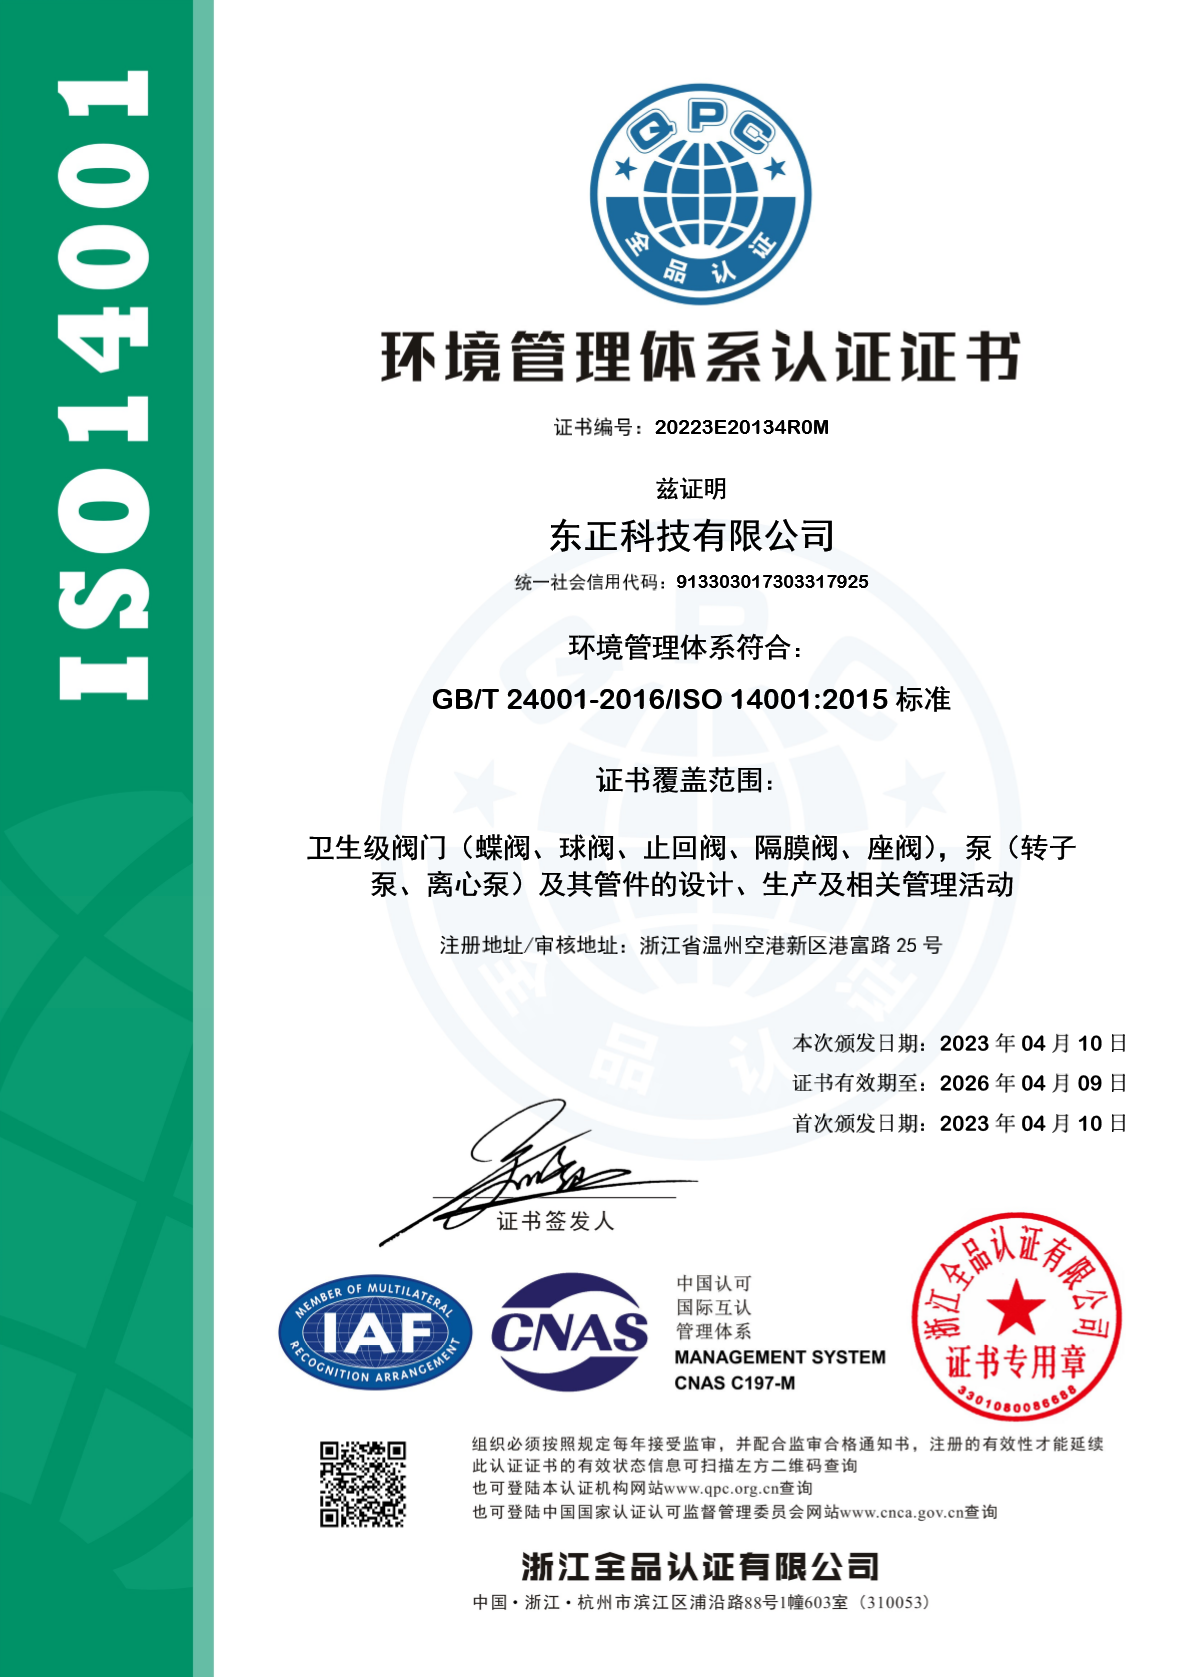 东正科技环境管理体系符合: gb/t 24001-2016/iso 14001:2015标准